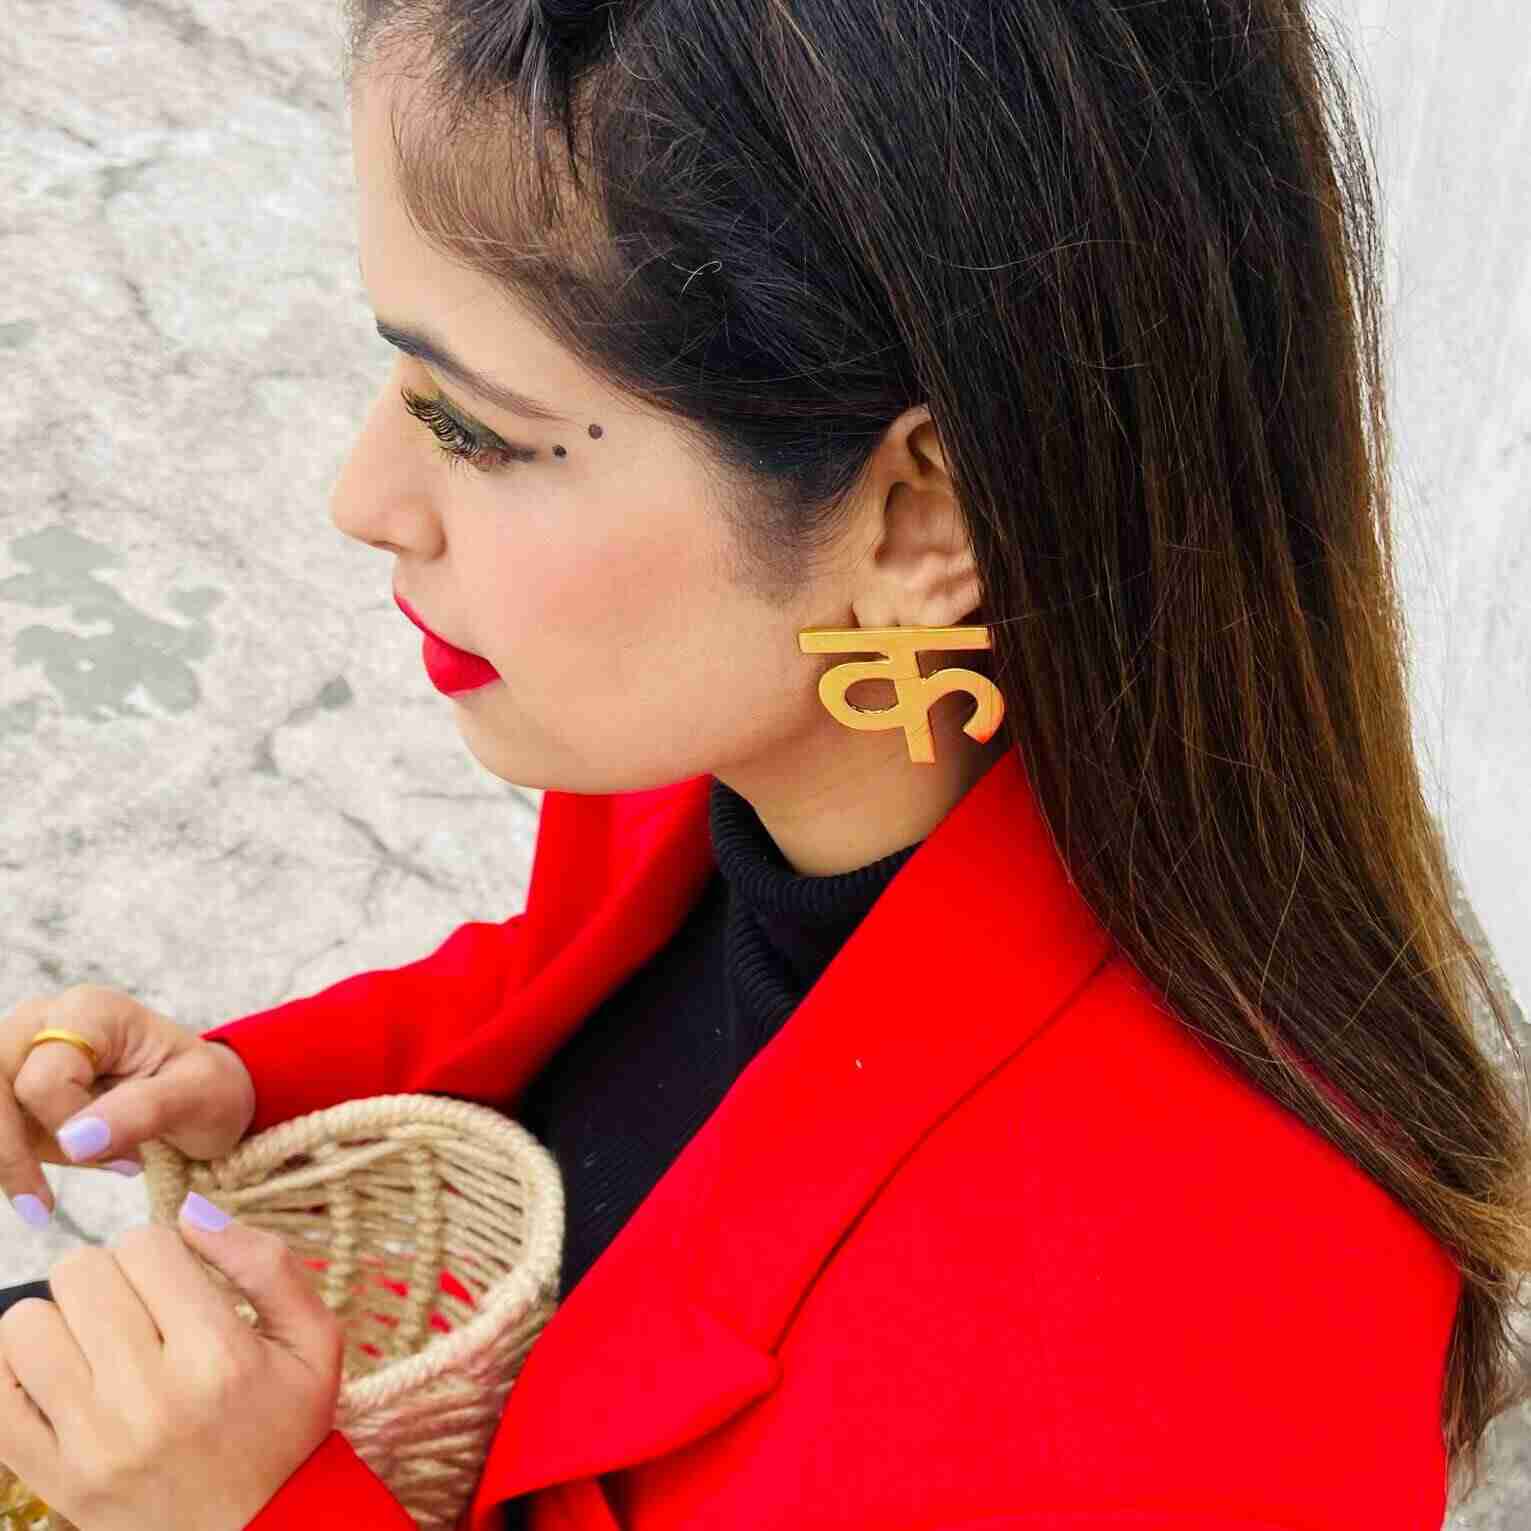 फेस्टिव सीजन में लेटेस्ट ज्वैलरी ट्रेंड के साथ इन फैशन ईयररिंग्स से खुद को  करें स्टाइल | fashion earrings for a festive season in Hindi - Hindi Boldsky